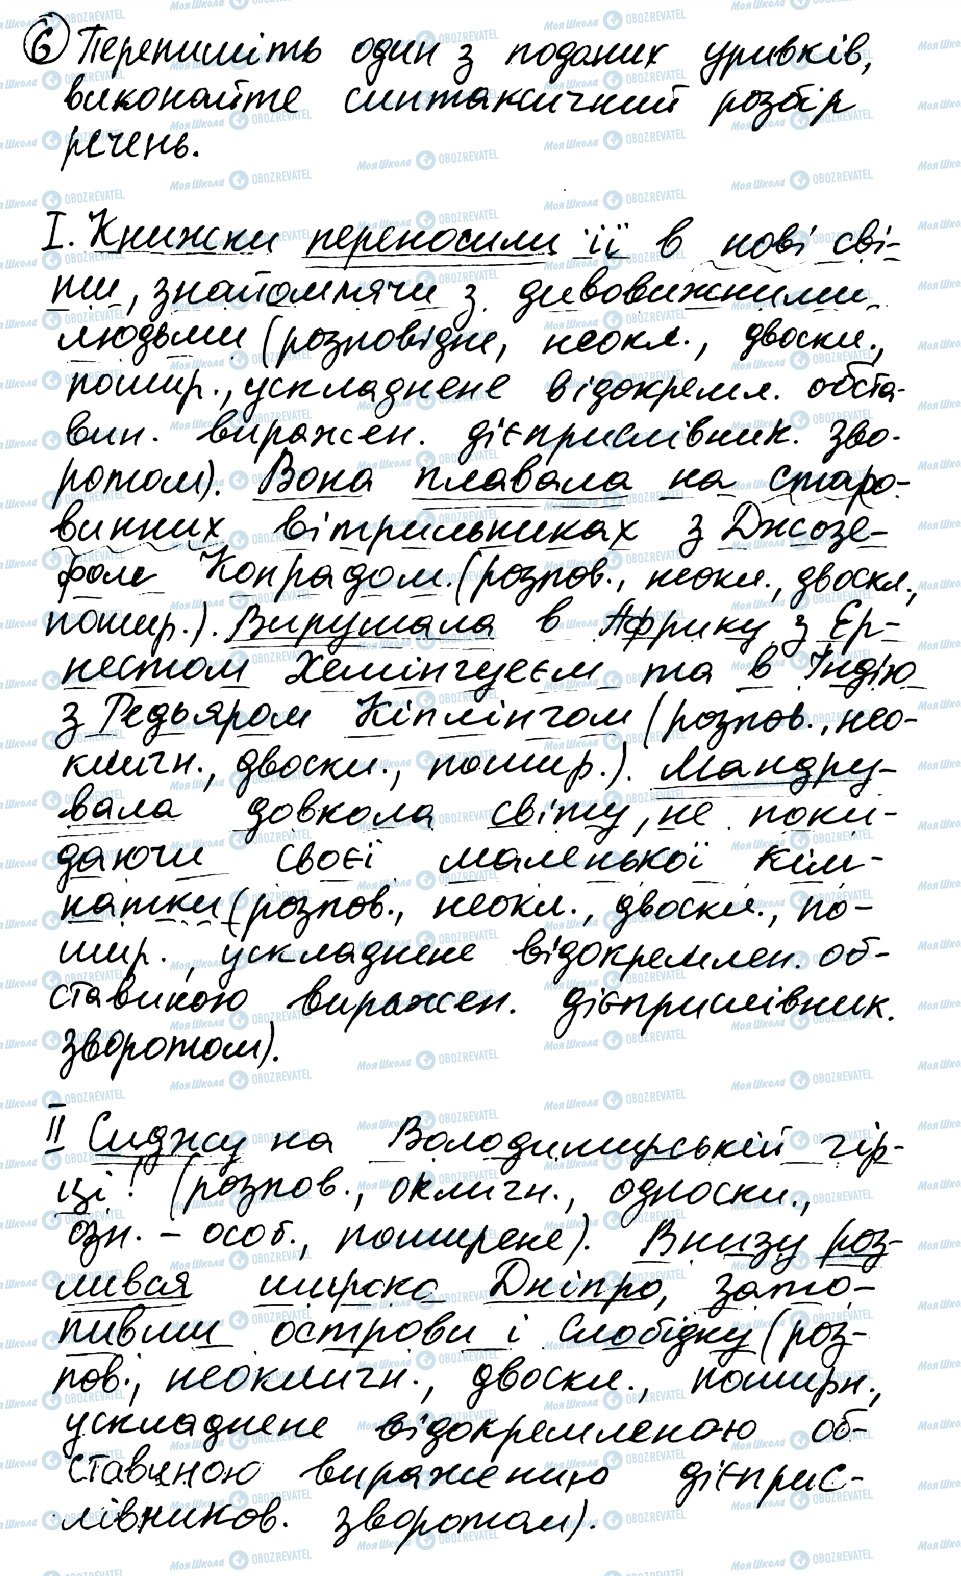 ГДЗ Українська мова 8 клас сторінка 6